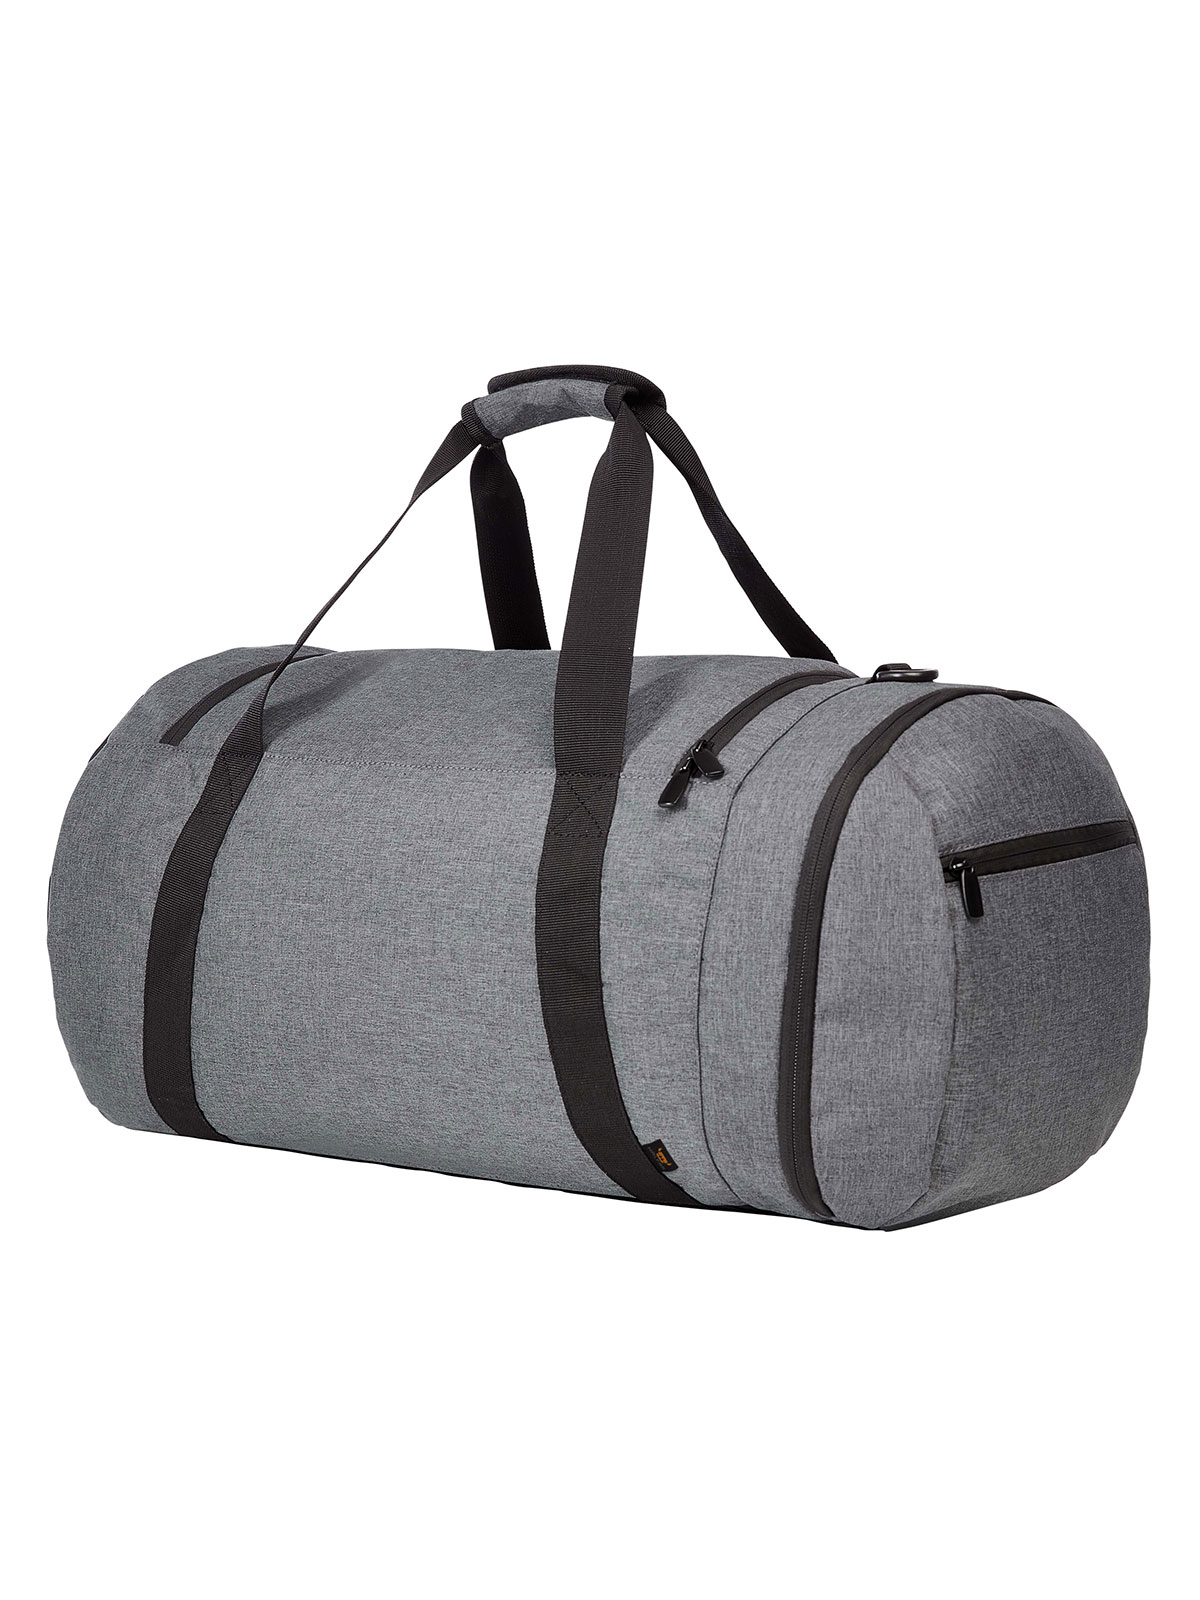 multi-bag-craft-grey-sprinkle.webp